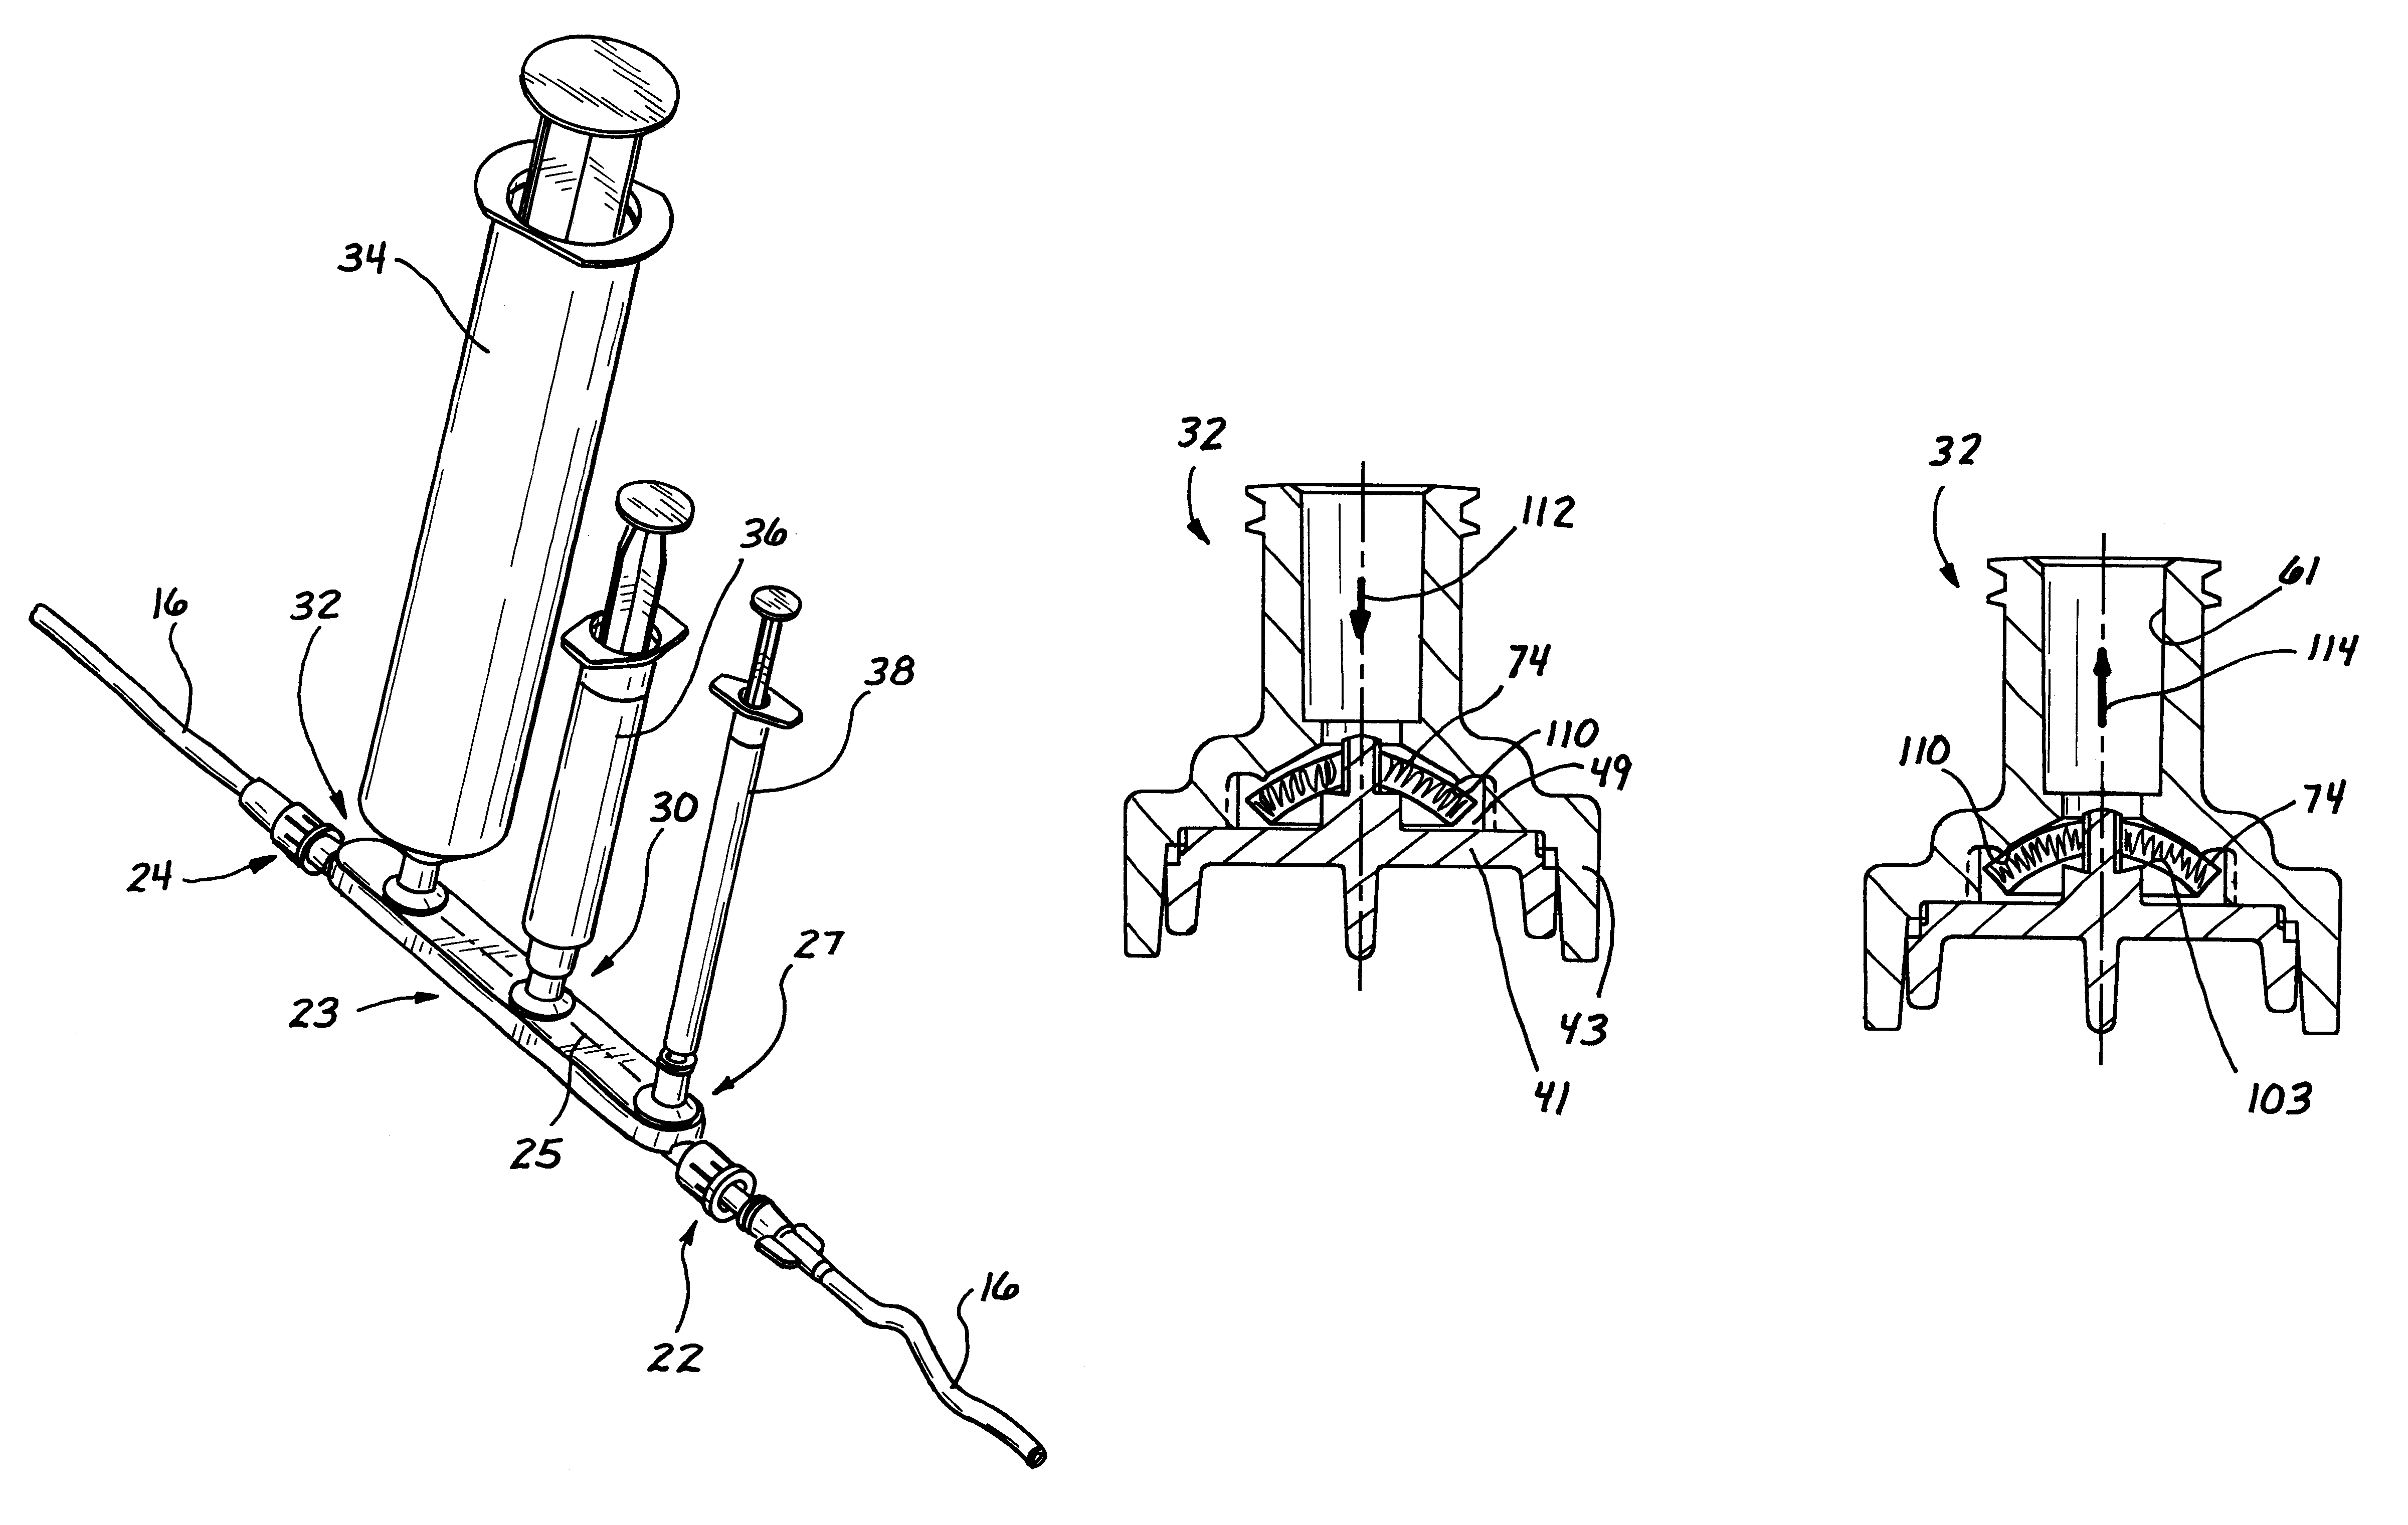 Multi-valve injection/aspiration manifold